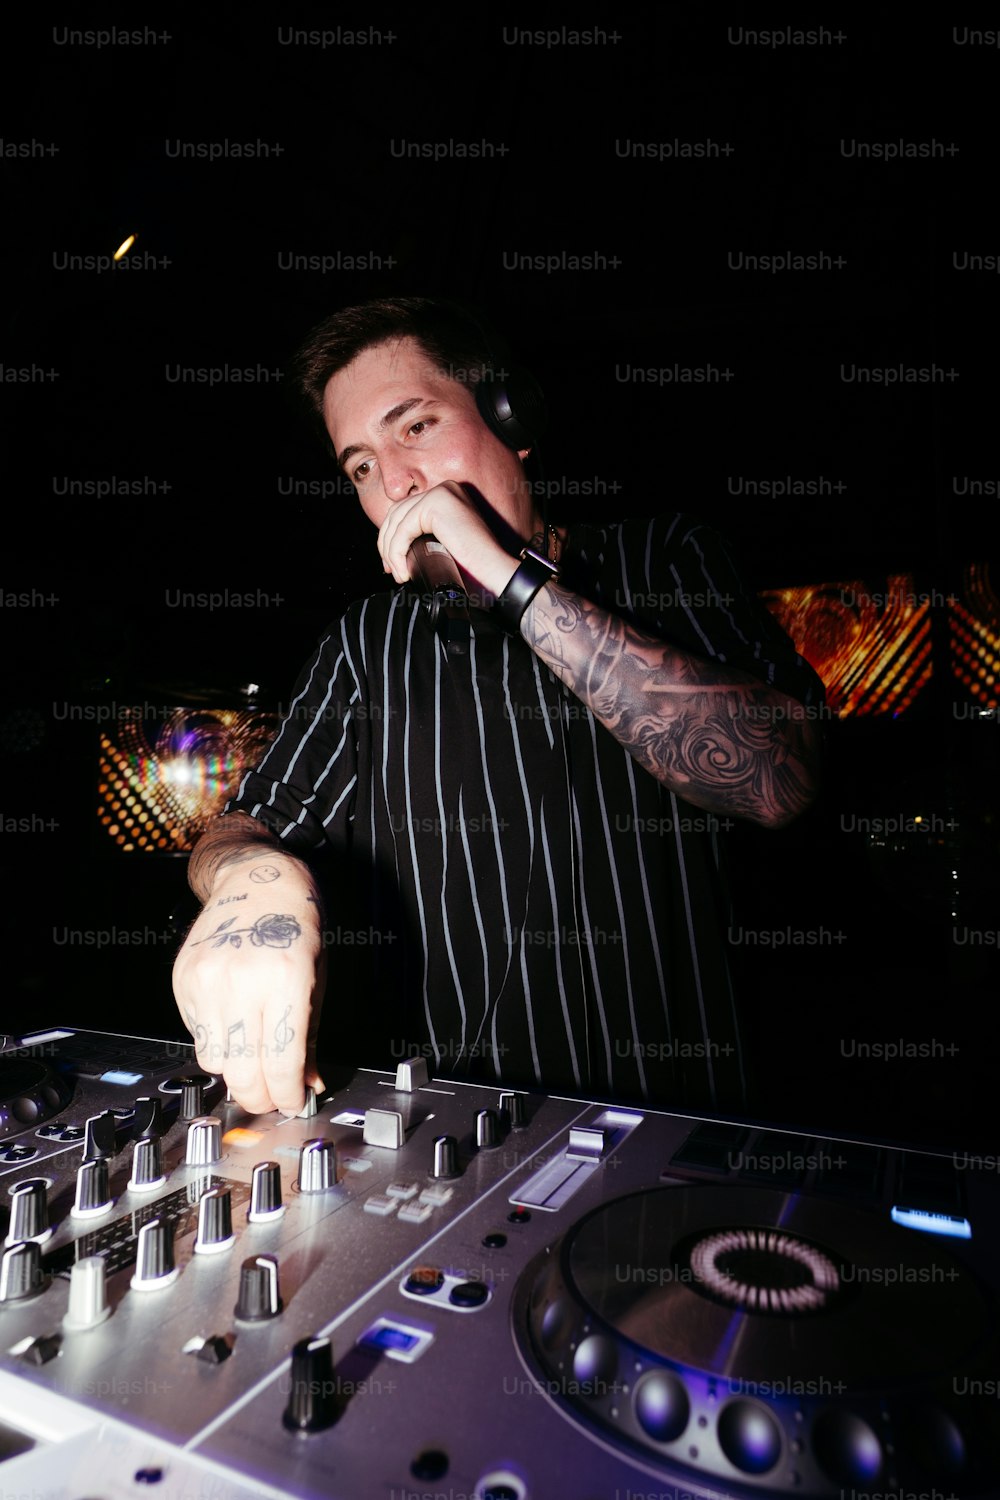 흑백 줄무늬 셔츠를 입은 남자가 DJ 세트를 연주하고 있다